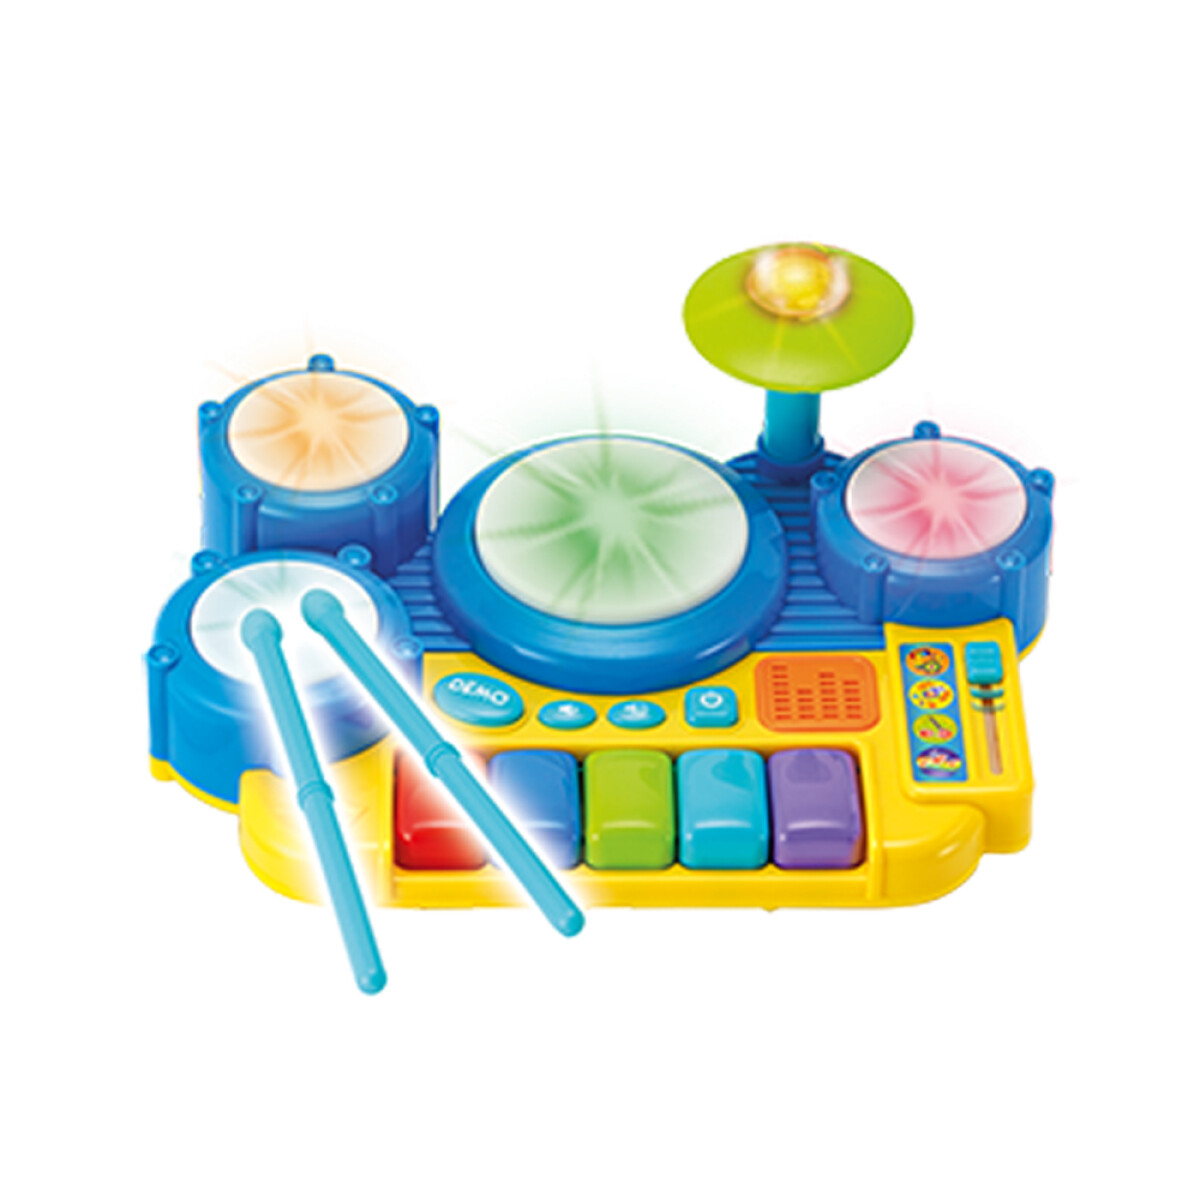 Batería y Teclado Set Infantil c/Ritmos Música Luces Winfun - Multicolor 